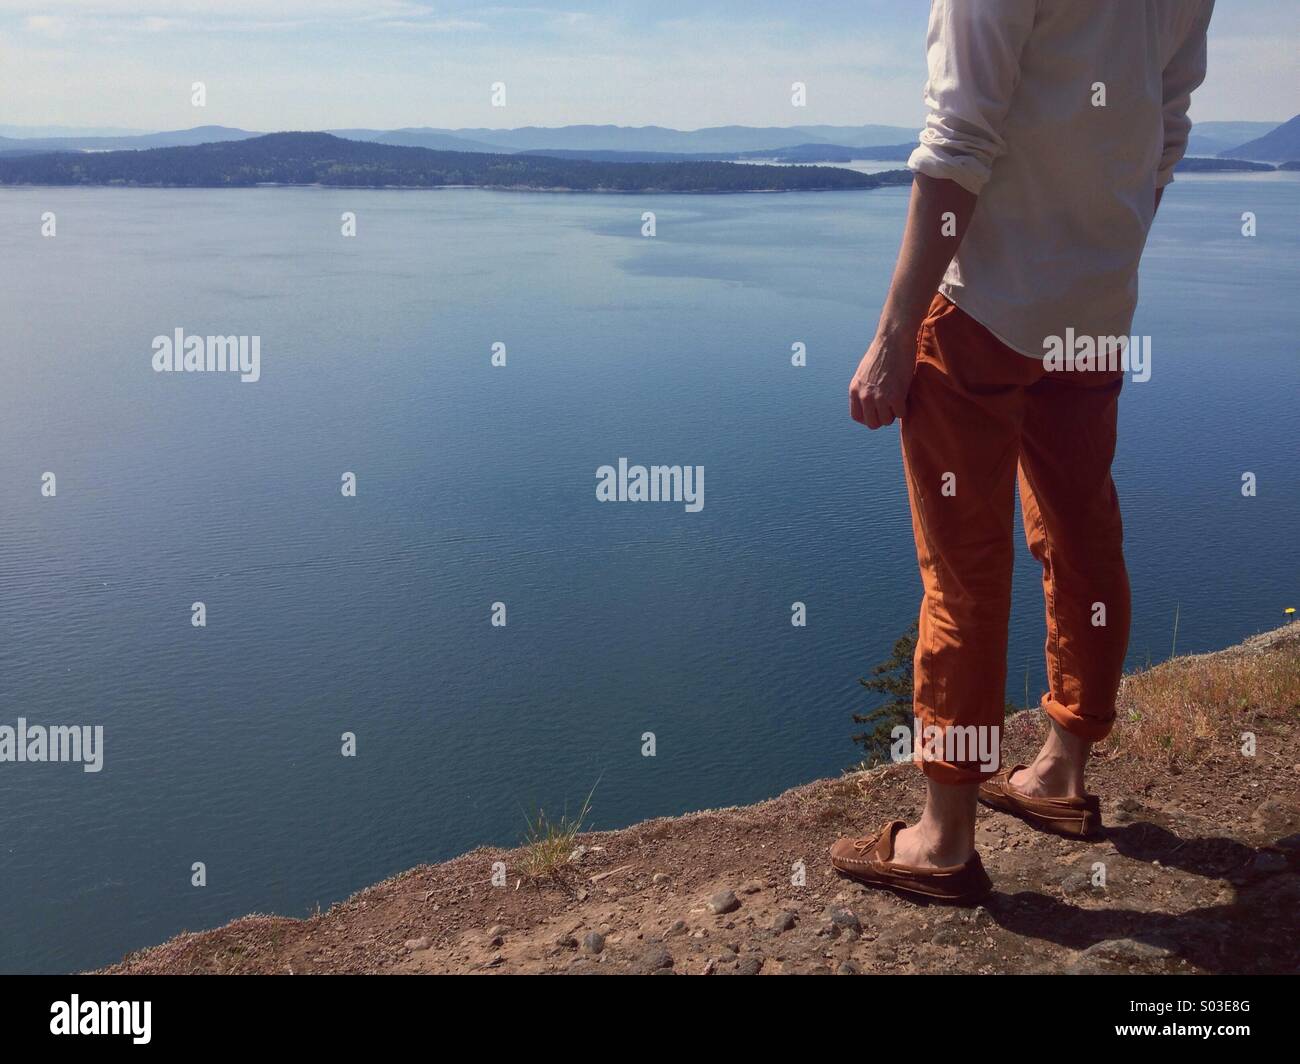 Anonyme stilvollen Mannes Oberkörper und Beinen stehend auf hohen Klippen mit Blick auf Meer und Inseln in der Sonne. Stockfoto